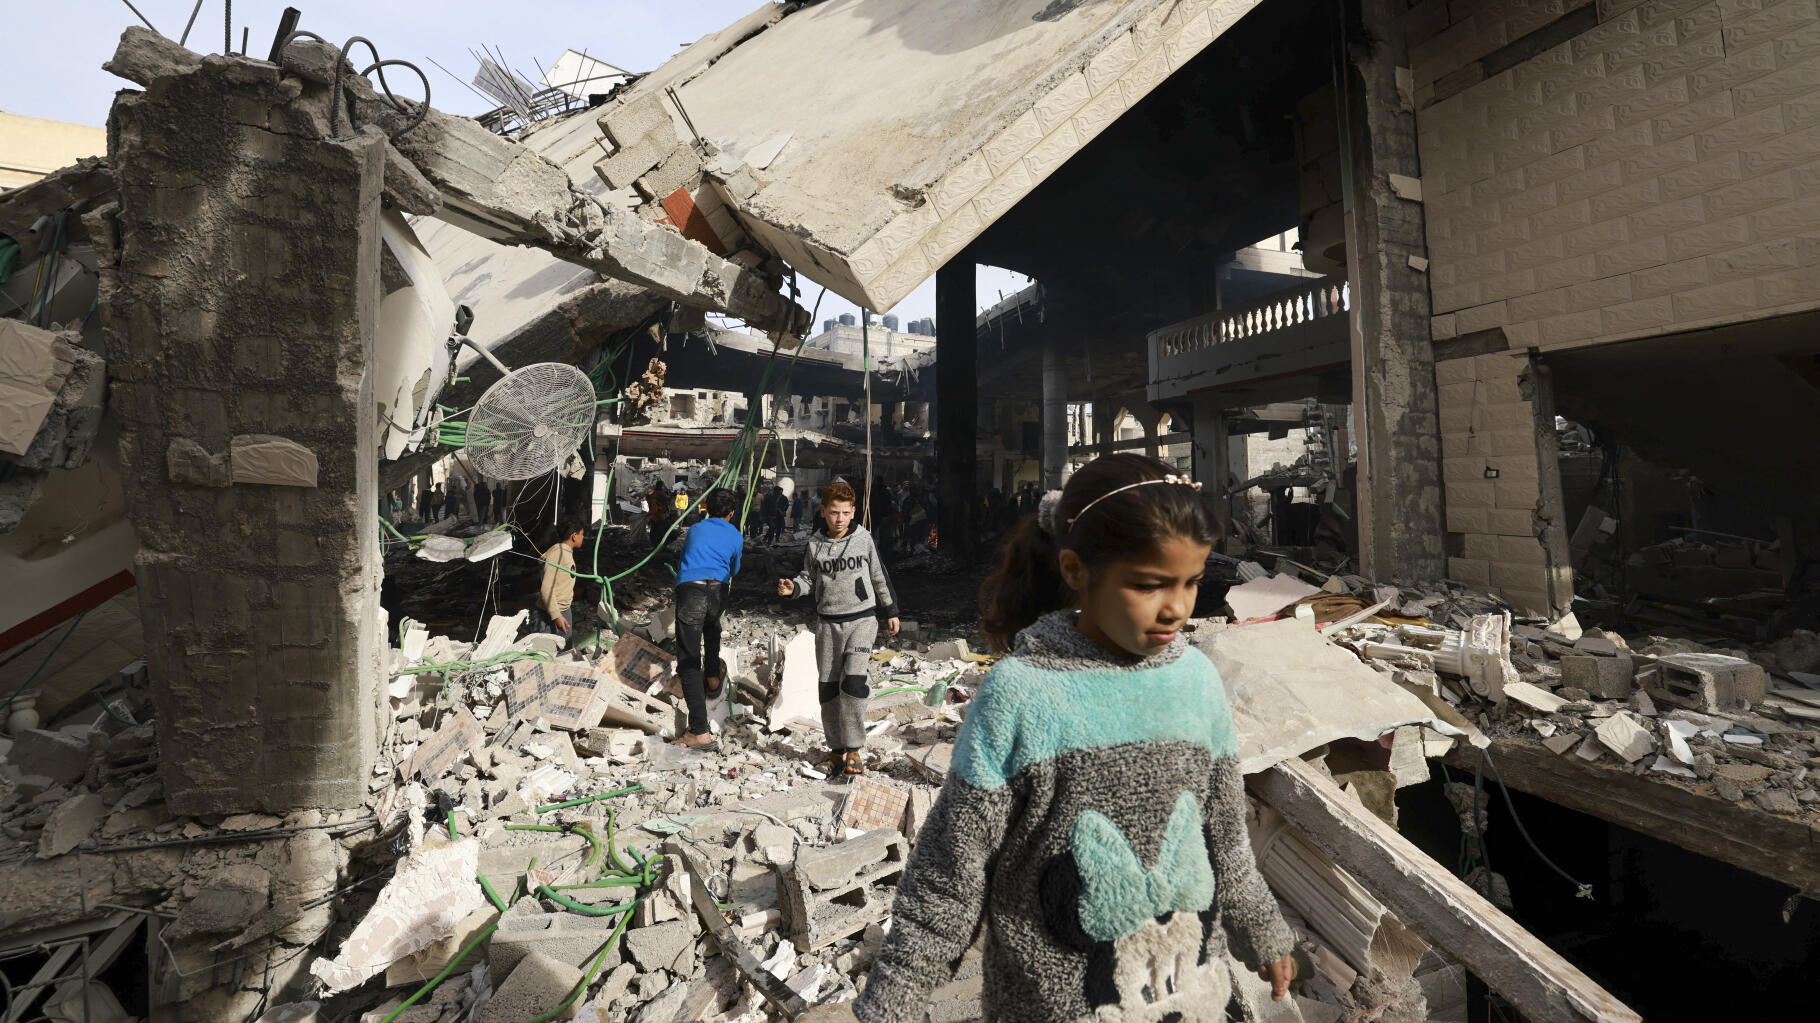   Gaza : Ce que l’on sait de l’opération sur Rafah qu’Israël veut lancer  